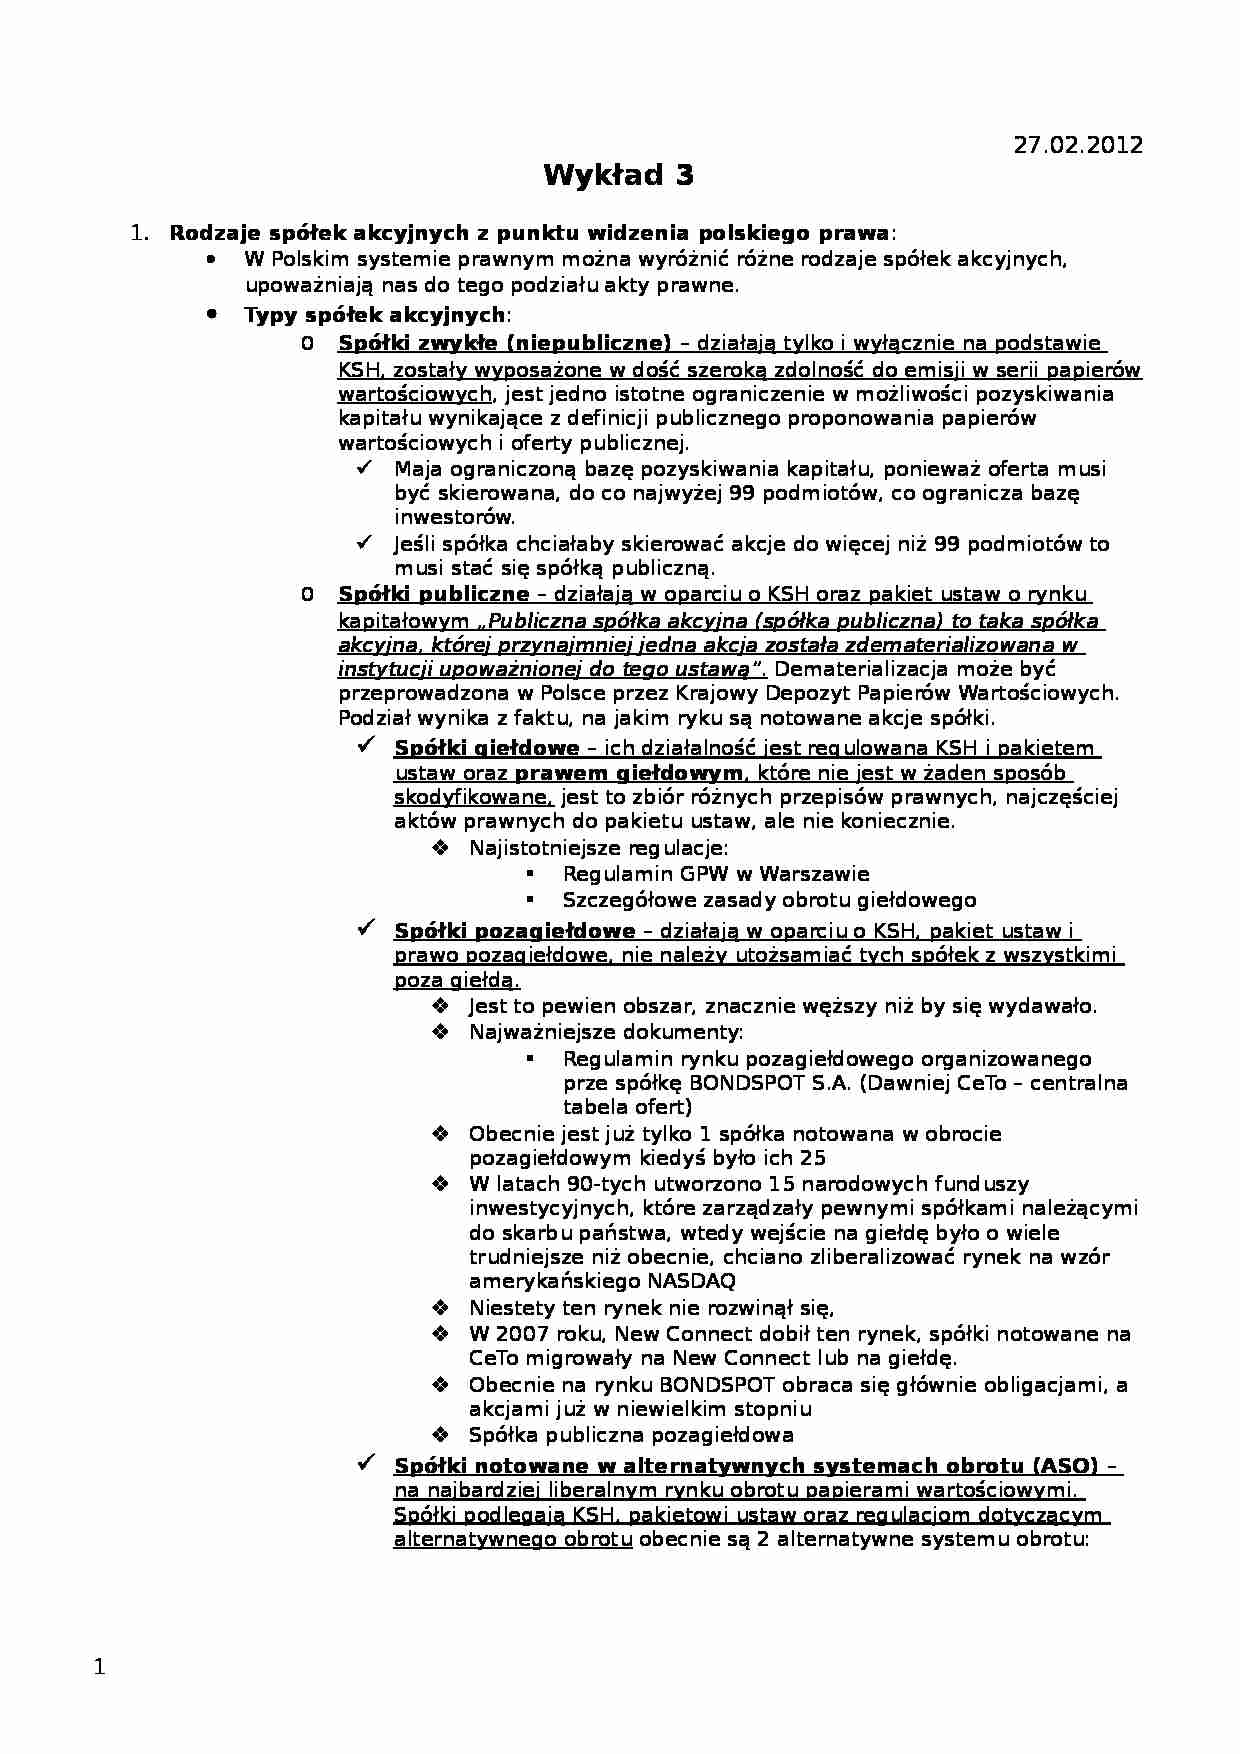 Organizacja obrotu papierami wartościowymi w Polsce - wykład - strona 1